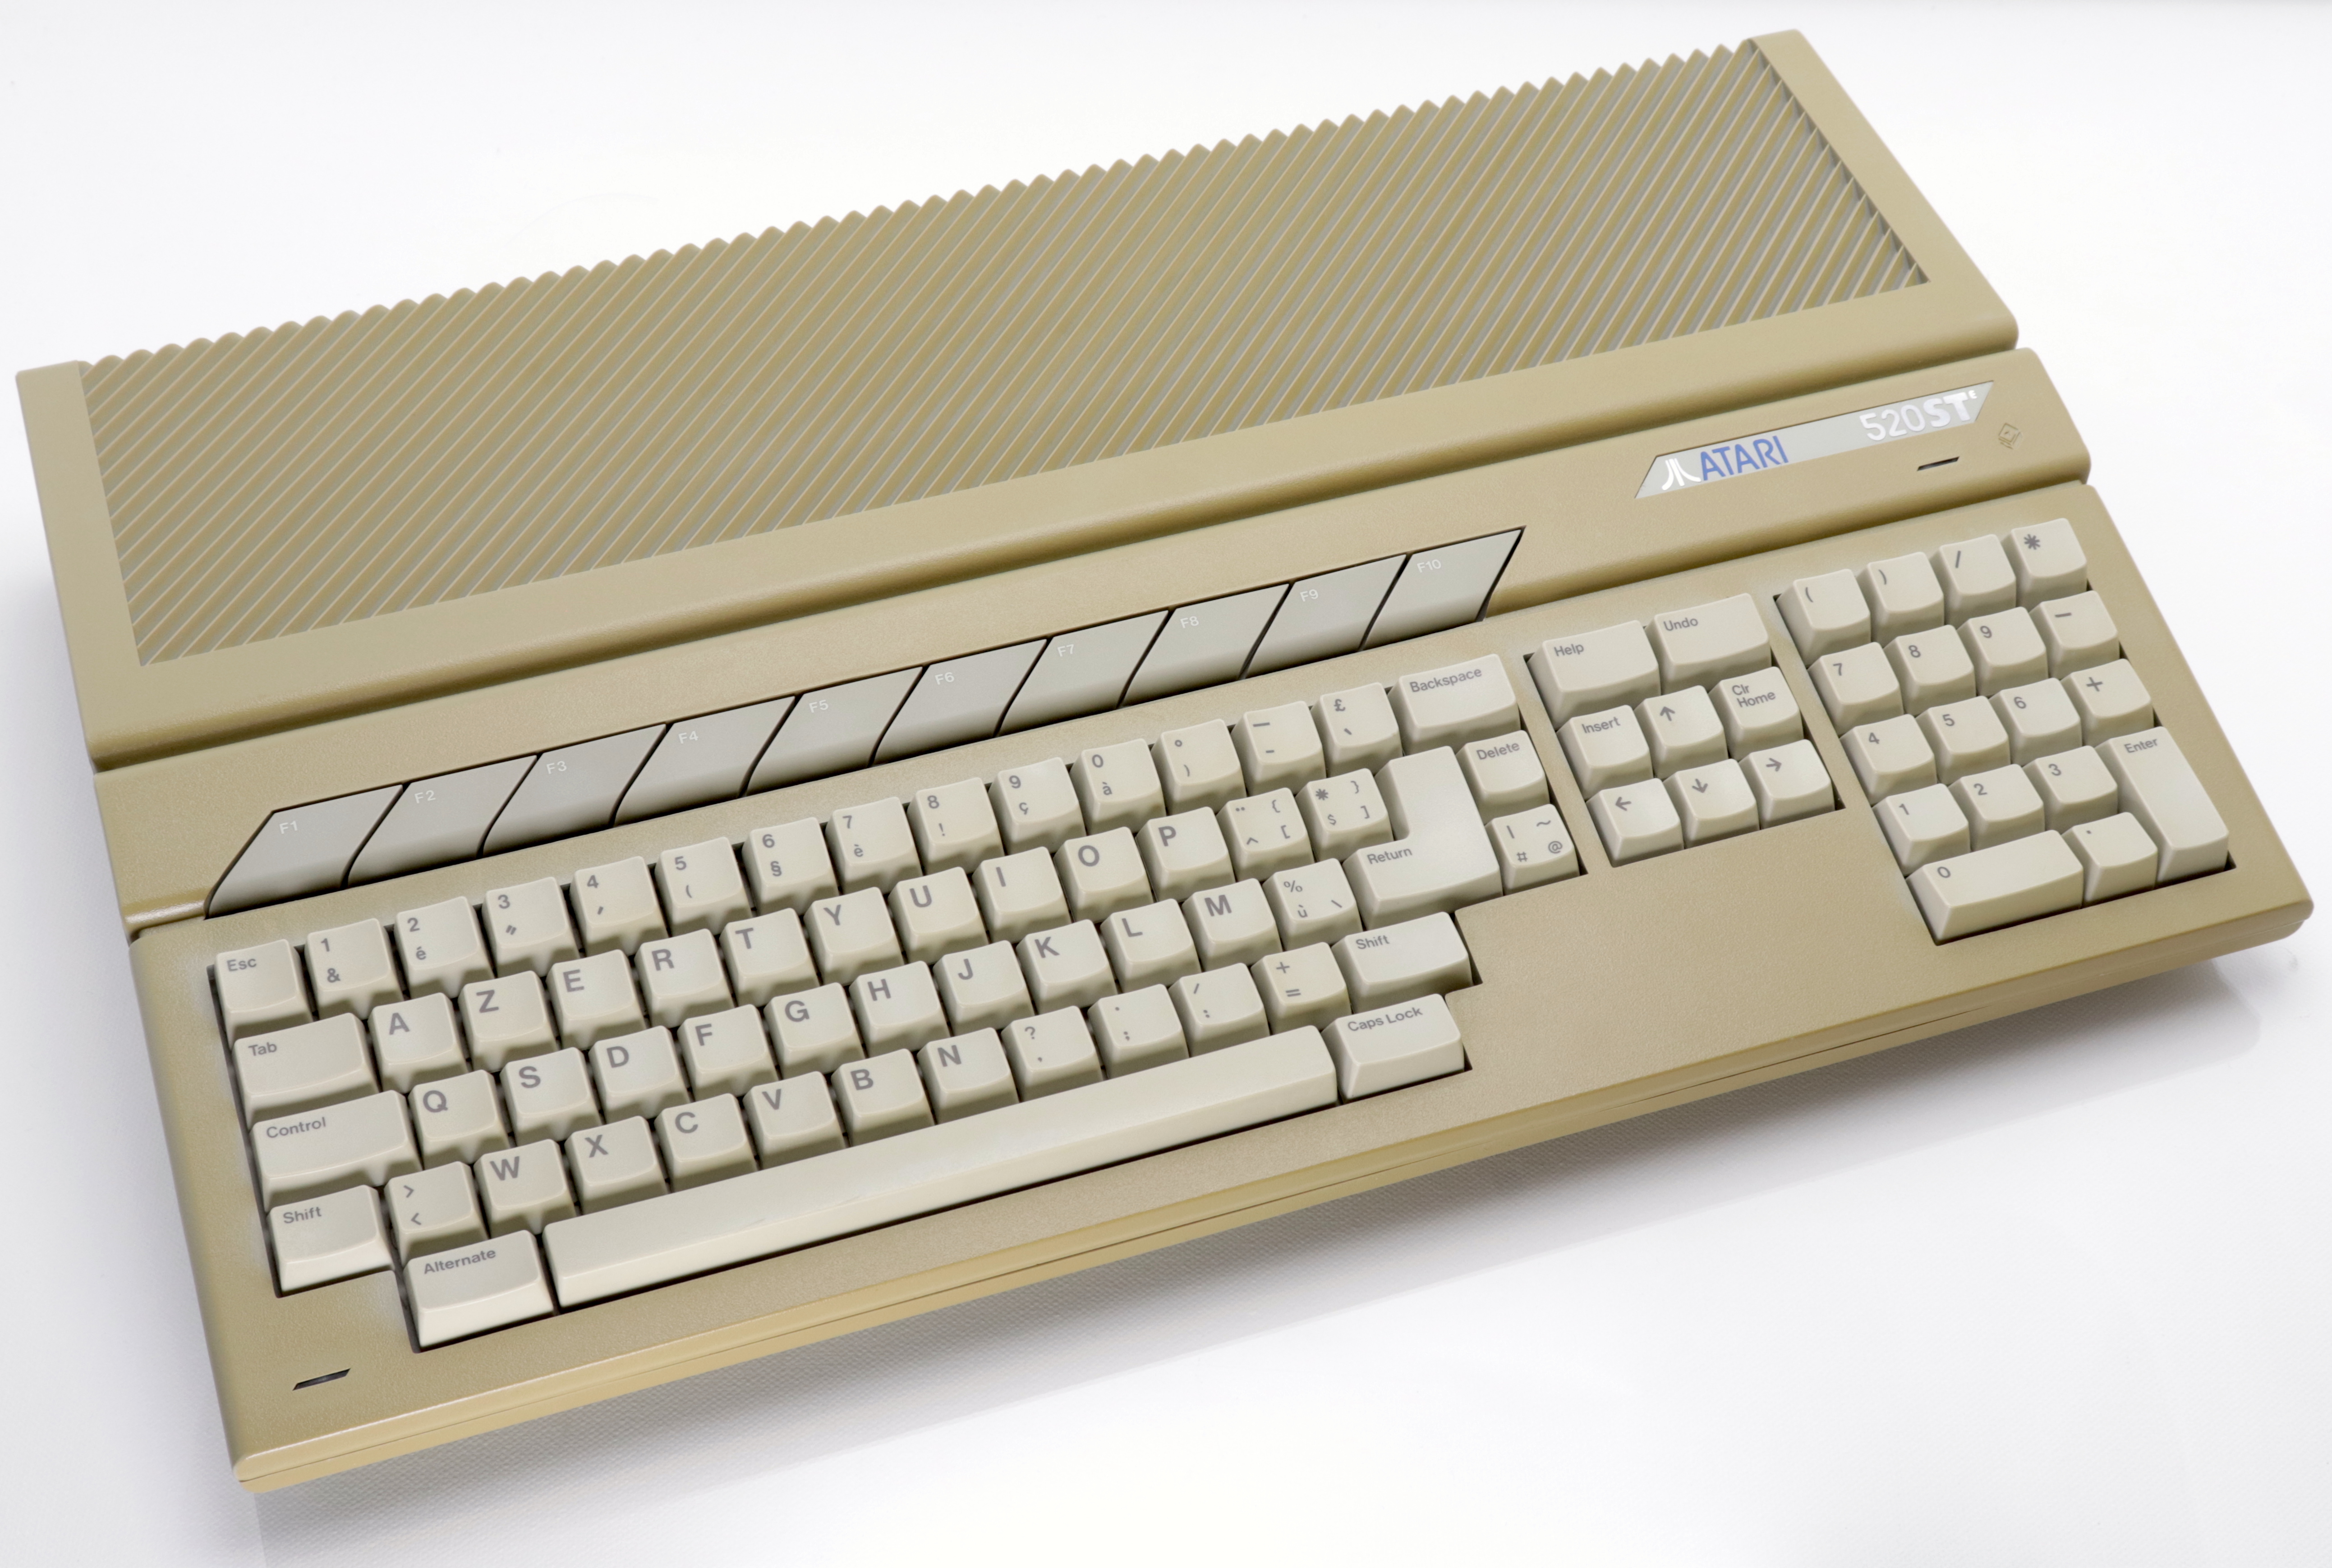 Atari 520STe